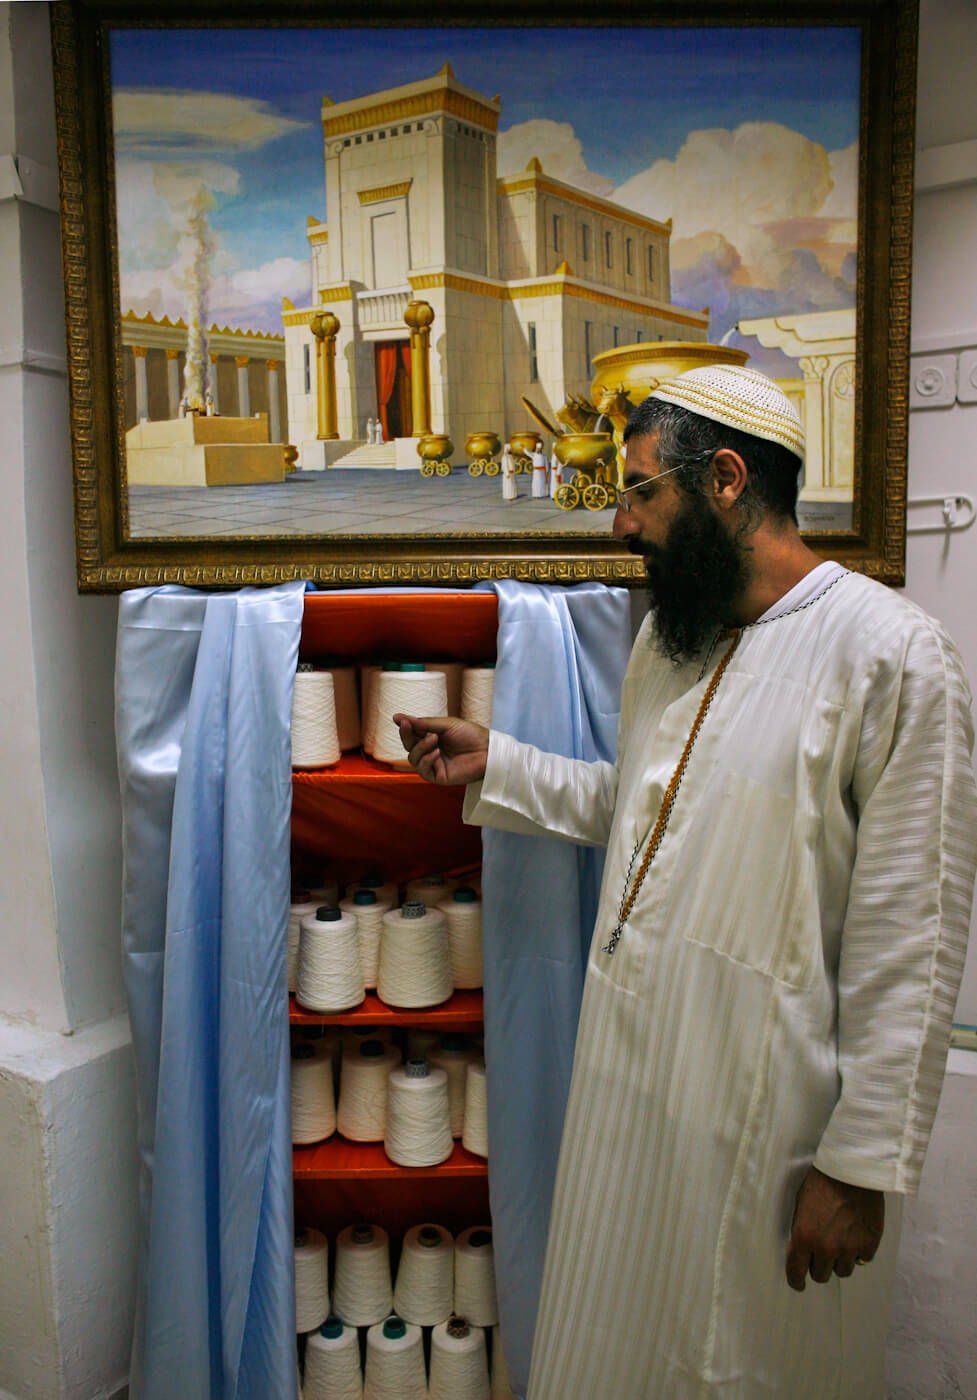 耶路撒冷的圣殿学院工场，裁缝为第三圣殿的牧师生产服装。 凯文·弗雷耶| 美联社